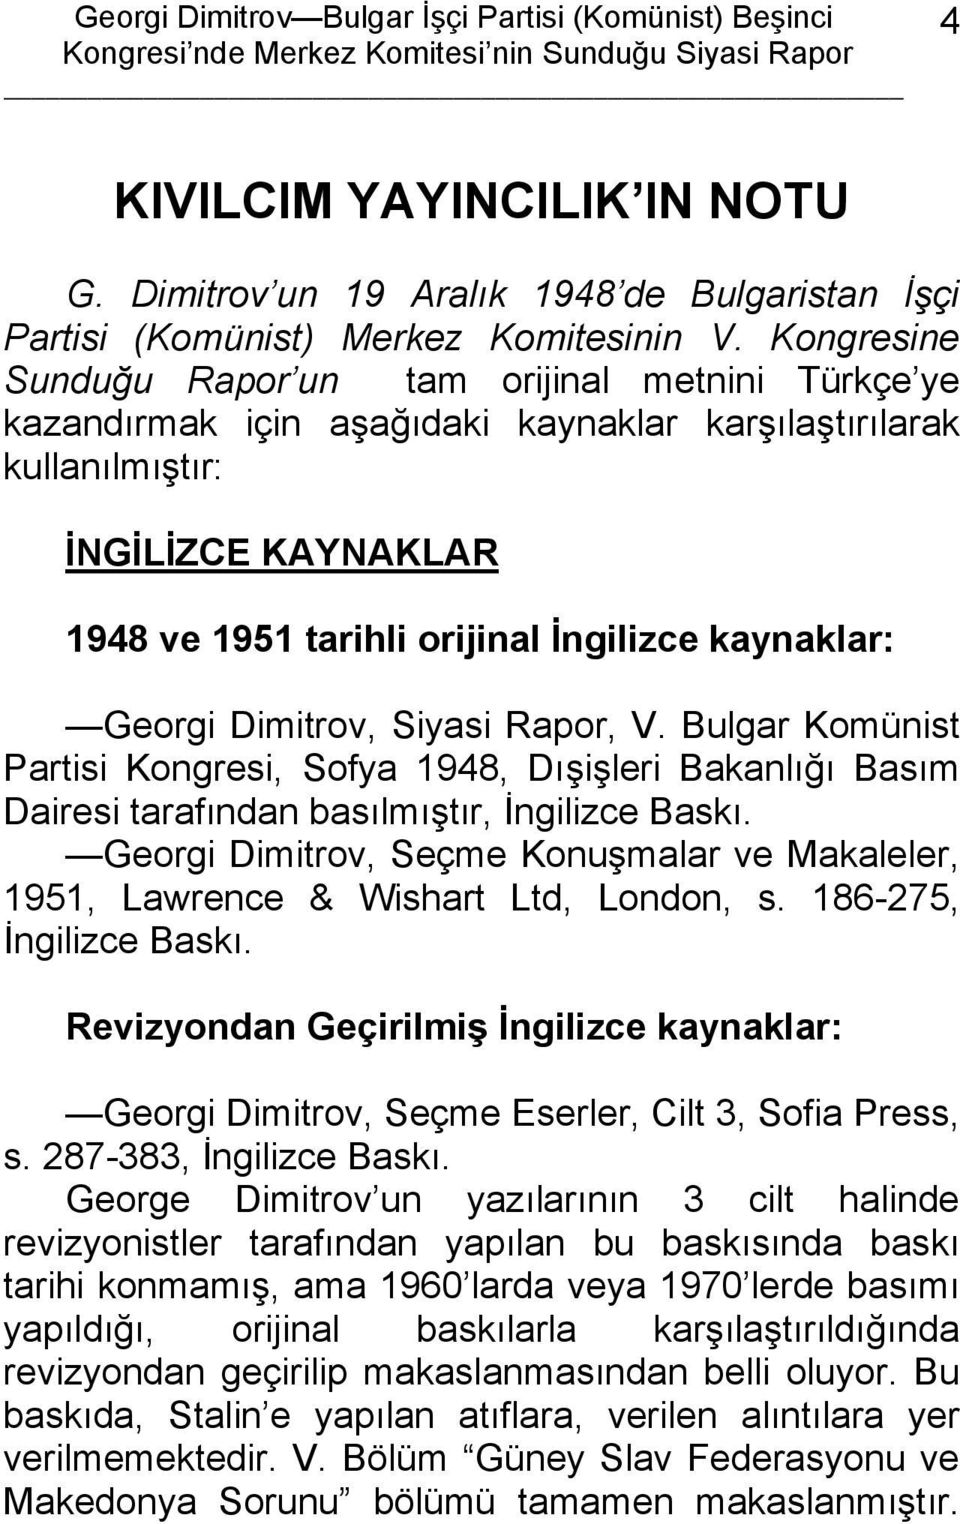 kaynaklar: Georgi Dimitrov, Siyasi Rapor, V. Bulgar Komünist Partisi Kongresi, Sofya 1948, Dışişleri Bakanlığı Basım Dairesi tarafından basılmıştır, İngilizce Baskı.